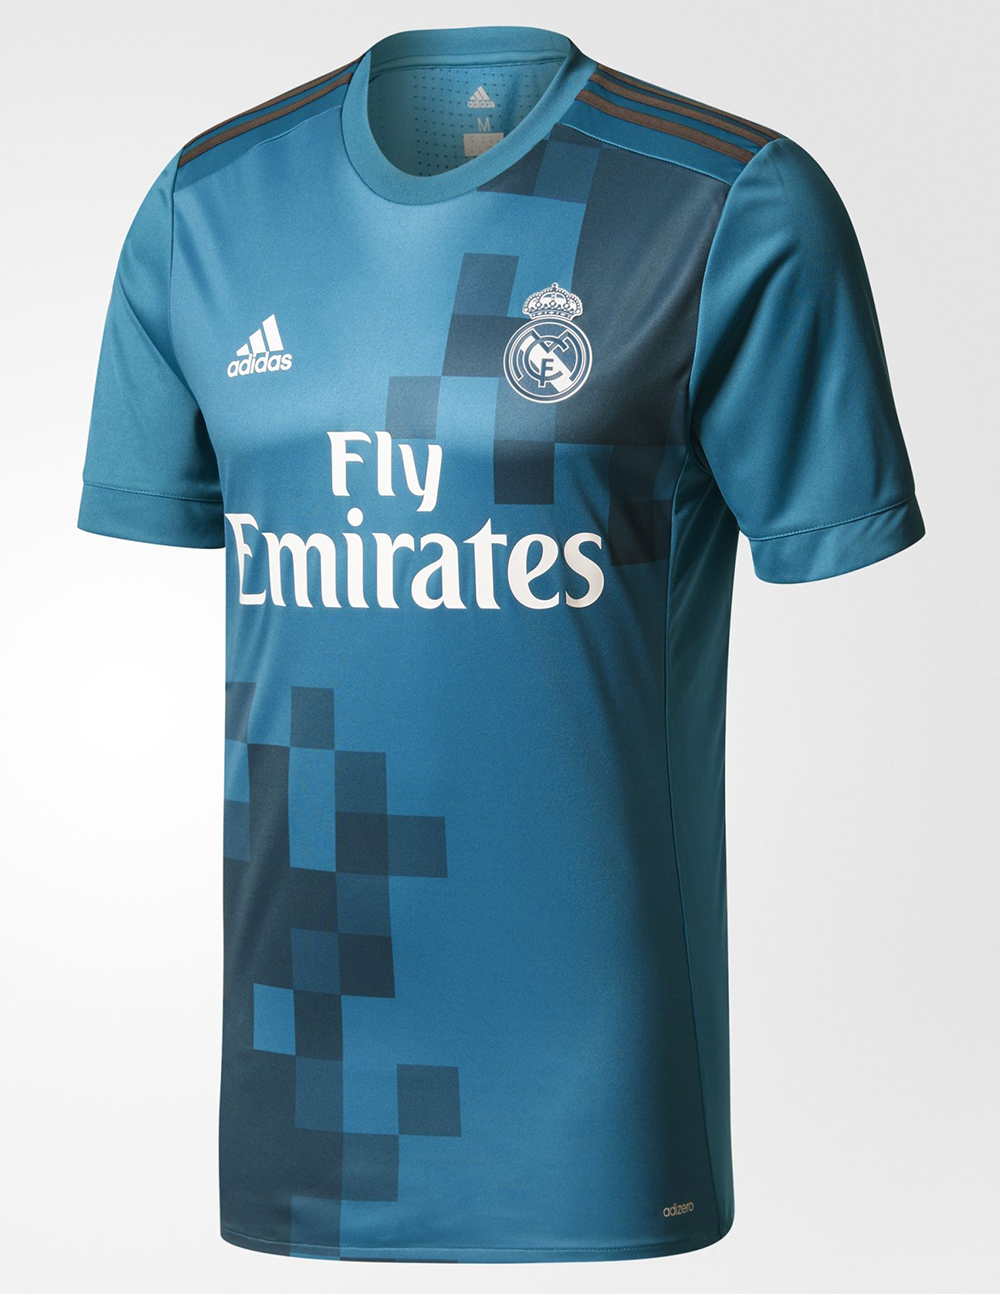 Tercera camiseta adidas Madrid 2017/18 - Marca Gol